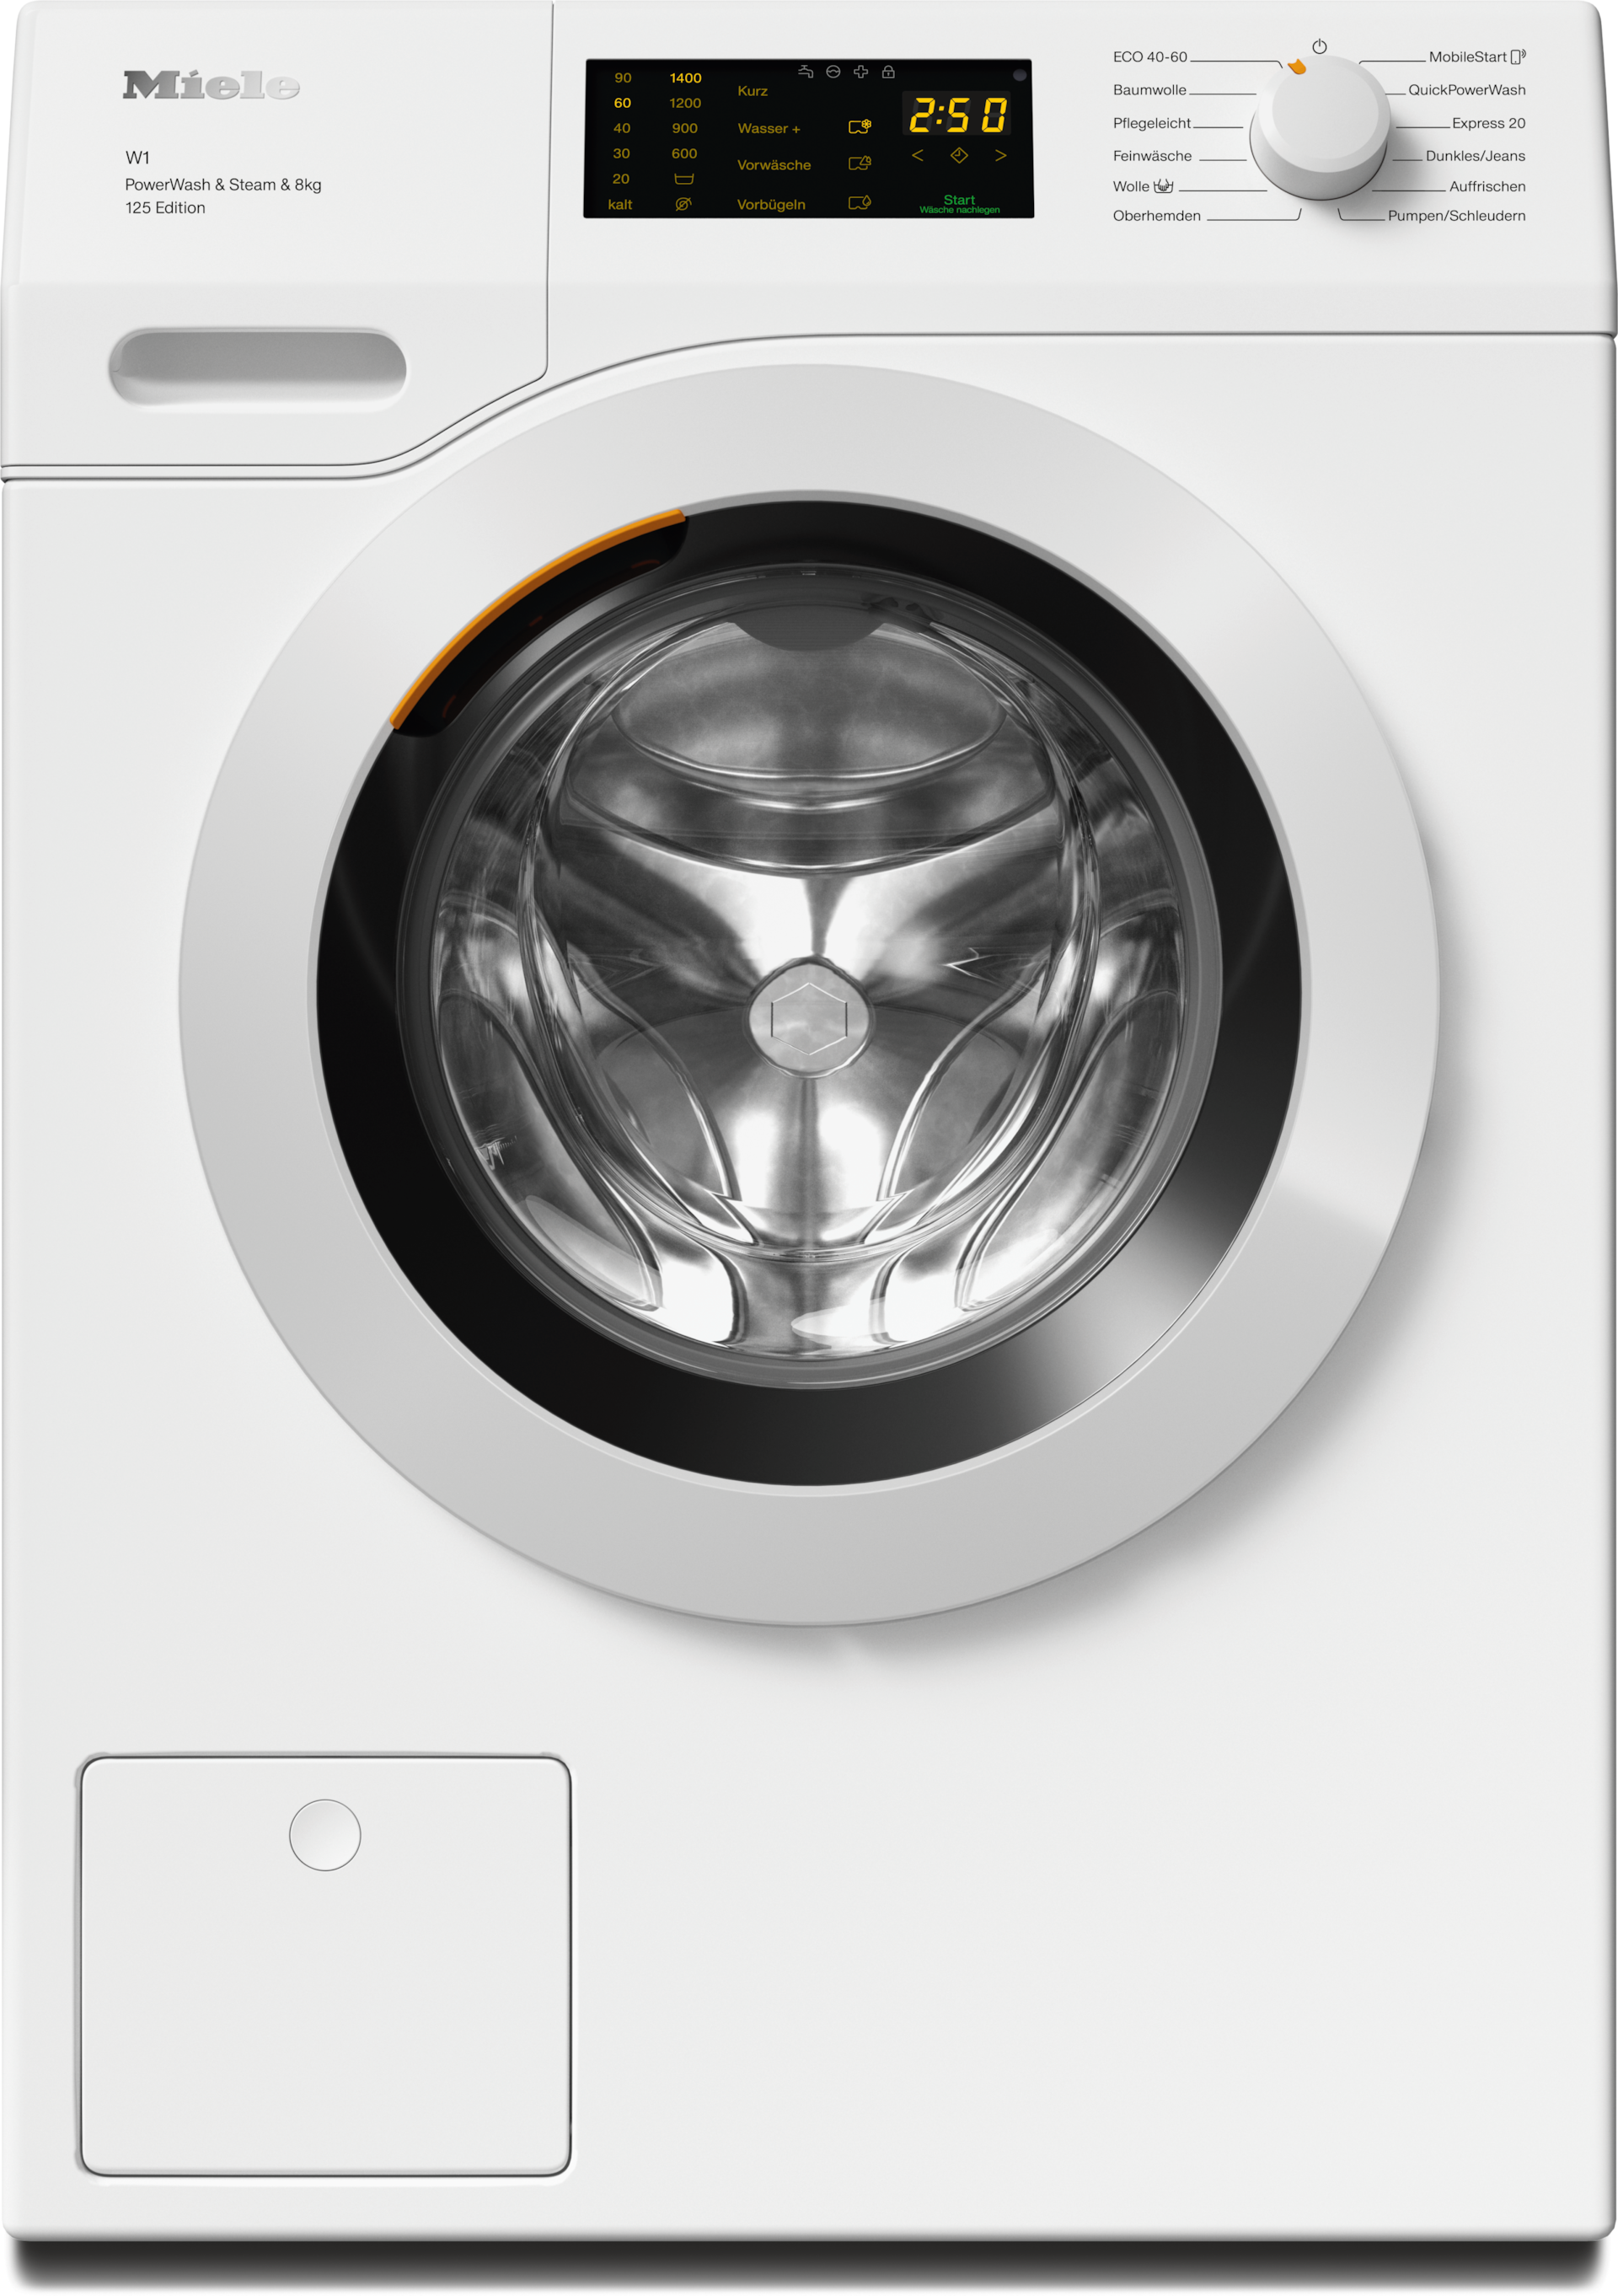 Waschmaschinen - WCB390 WPS 125 Edition Lotosweiß - 1